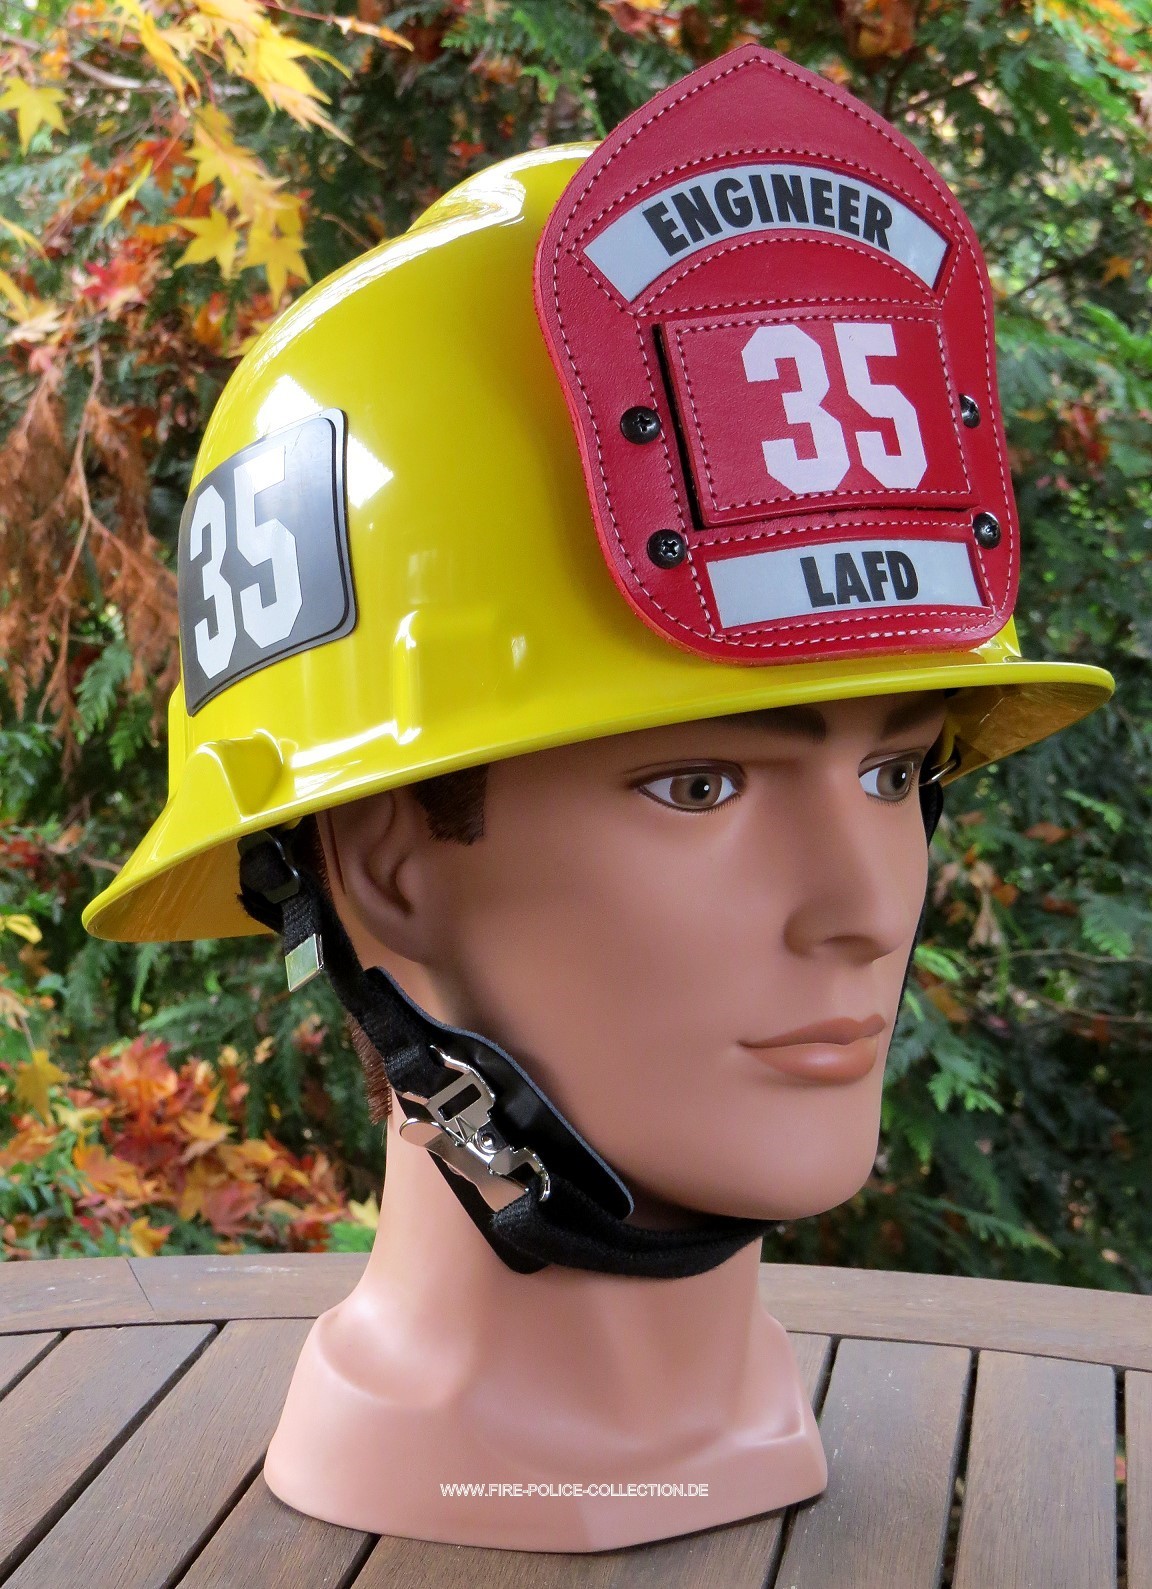 LAFD Helmet